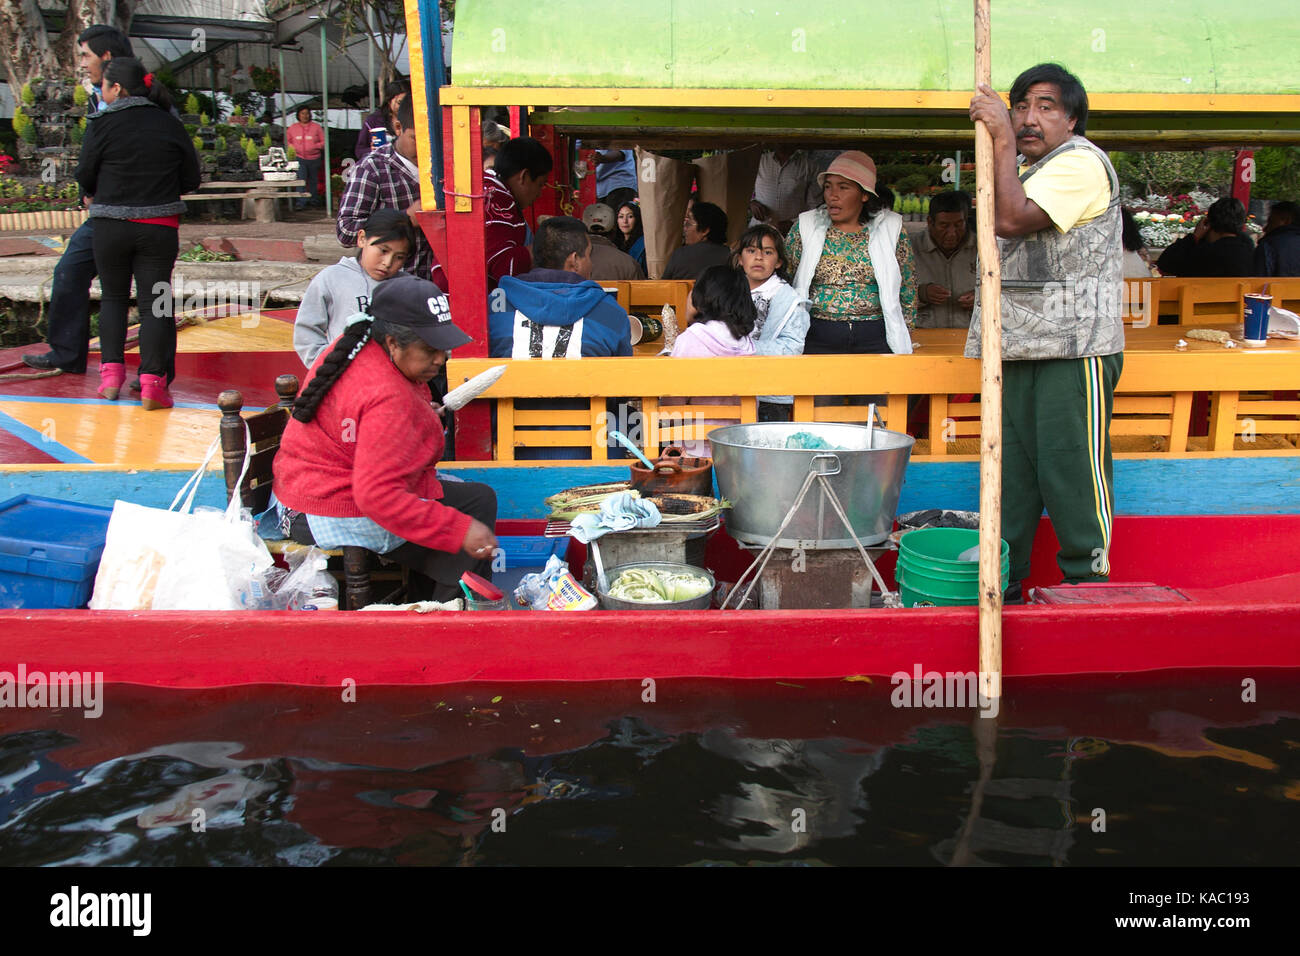 Xochimilco, Mexico City, Mexico - 2016: A fmily sells food on a trajinera boat. Stock Photo